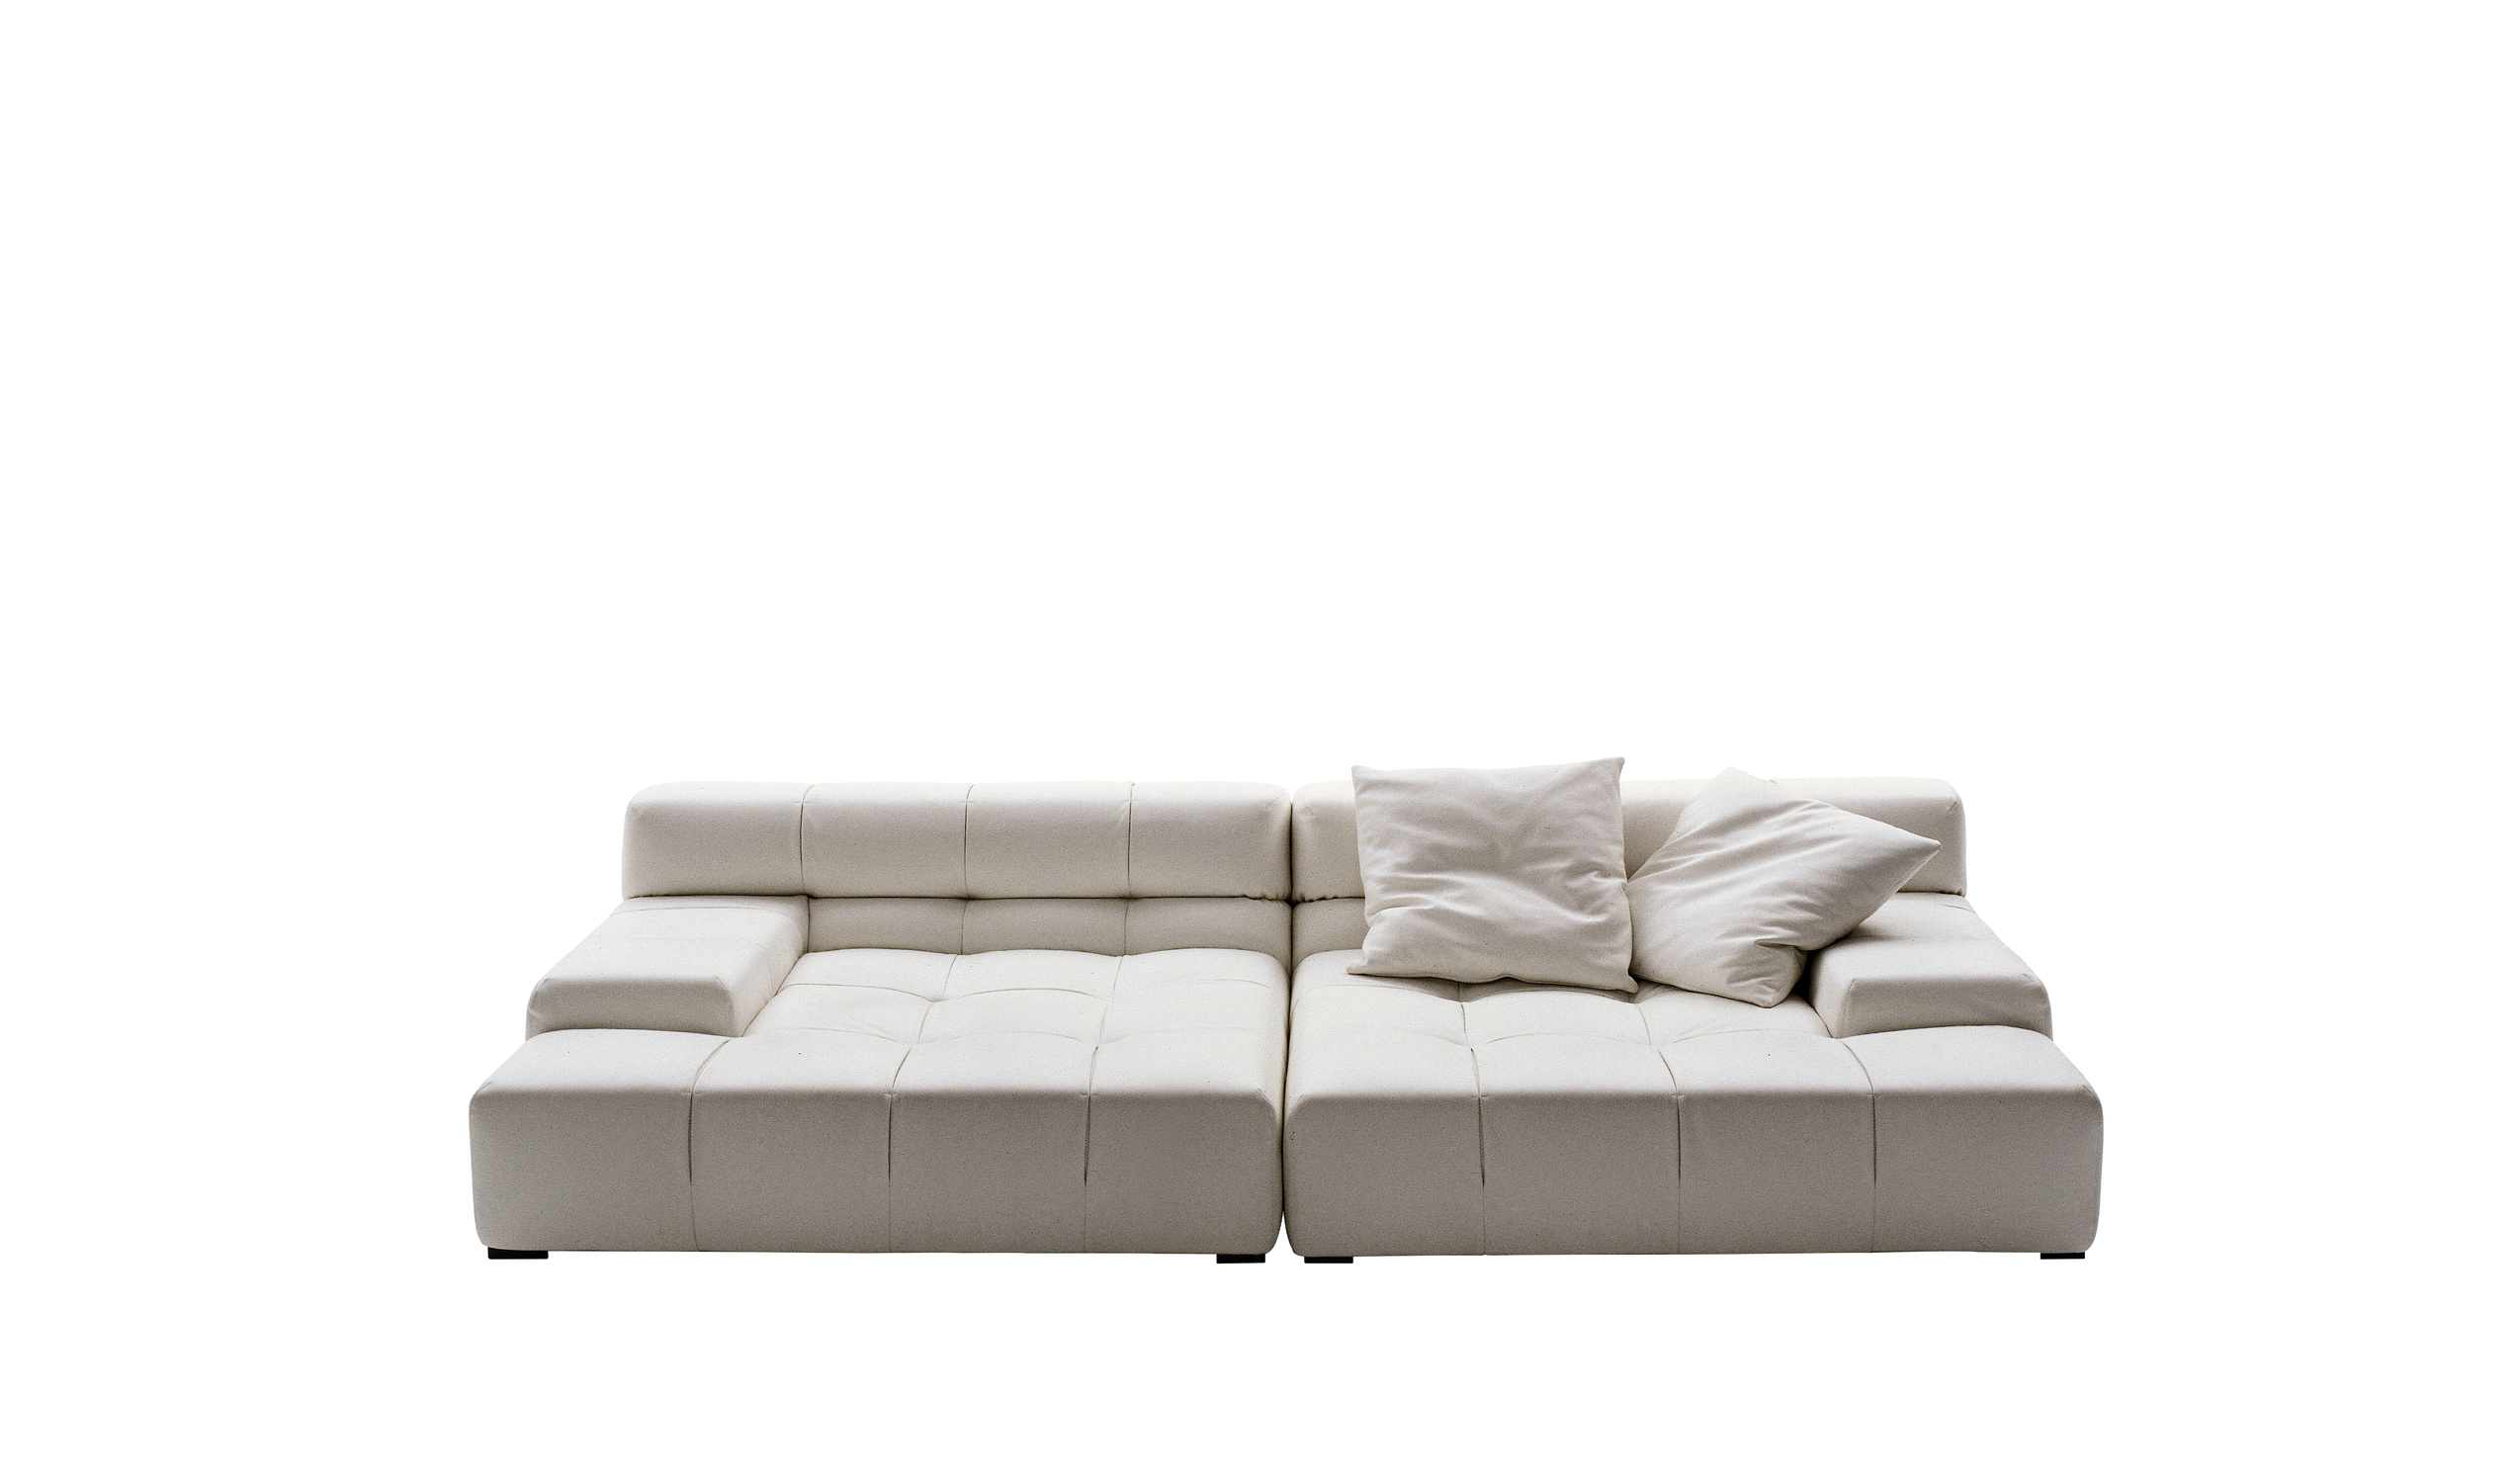 Modern designer italian sofas - Tufty-Time Sofas 9